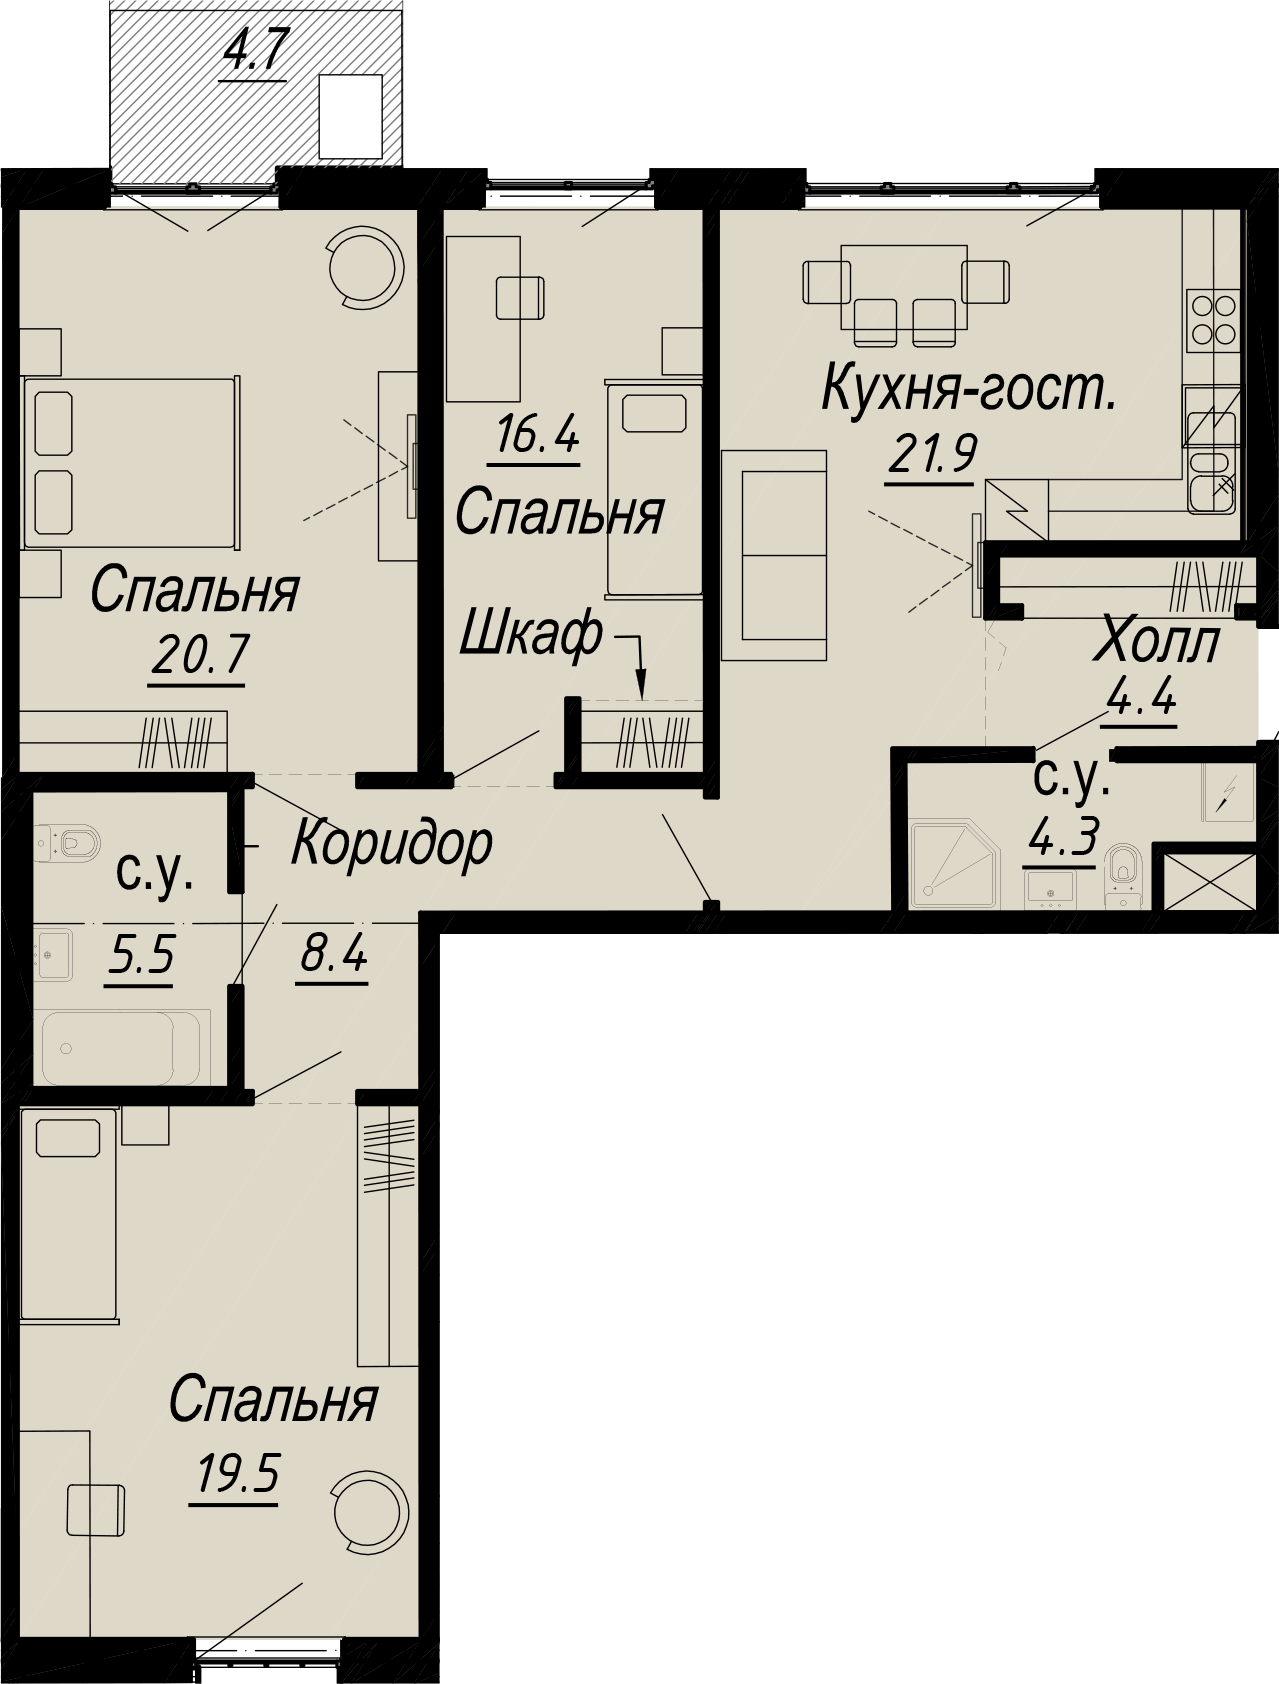 3-комнатная квартира  №5-6 в Meltzer Hall: 104.98 м², этаж 6 - купить в Санкт-Петербурге